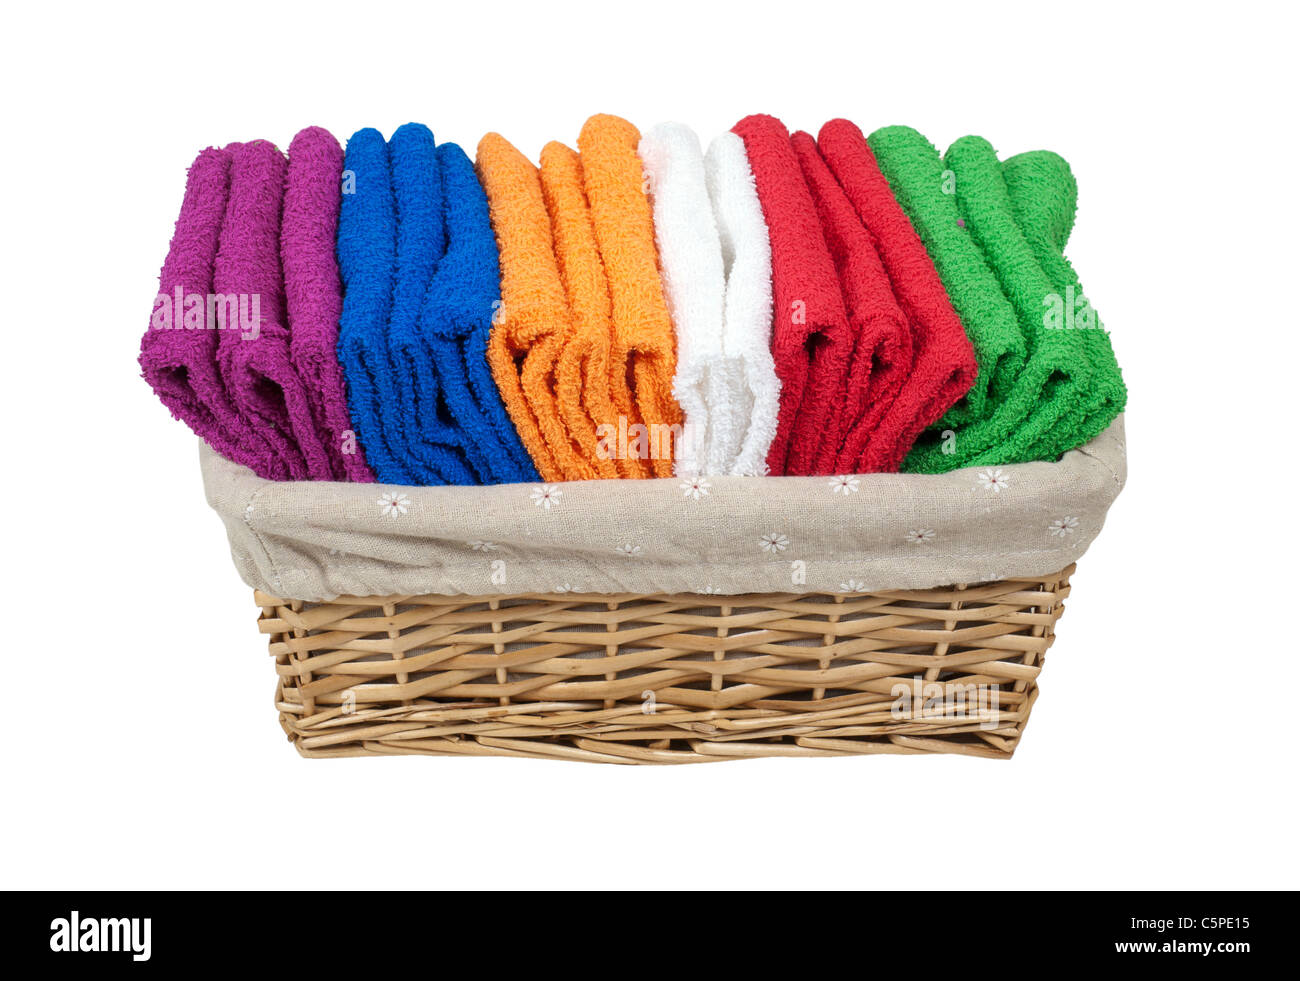 Collezione di coloratissimi asciugamani piegati per uso quotidiano in un rivestito cesto in vimini - percorso incluso Foto Stock